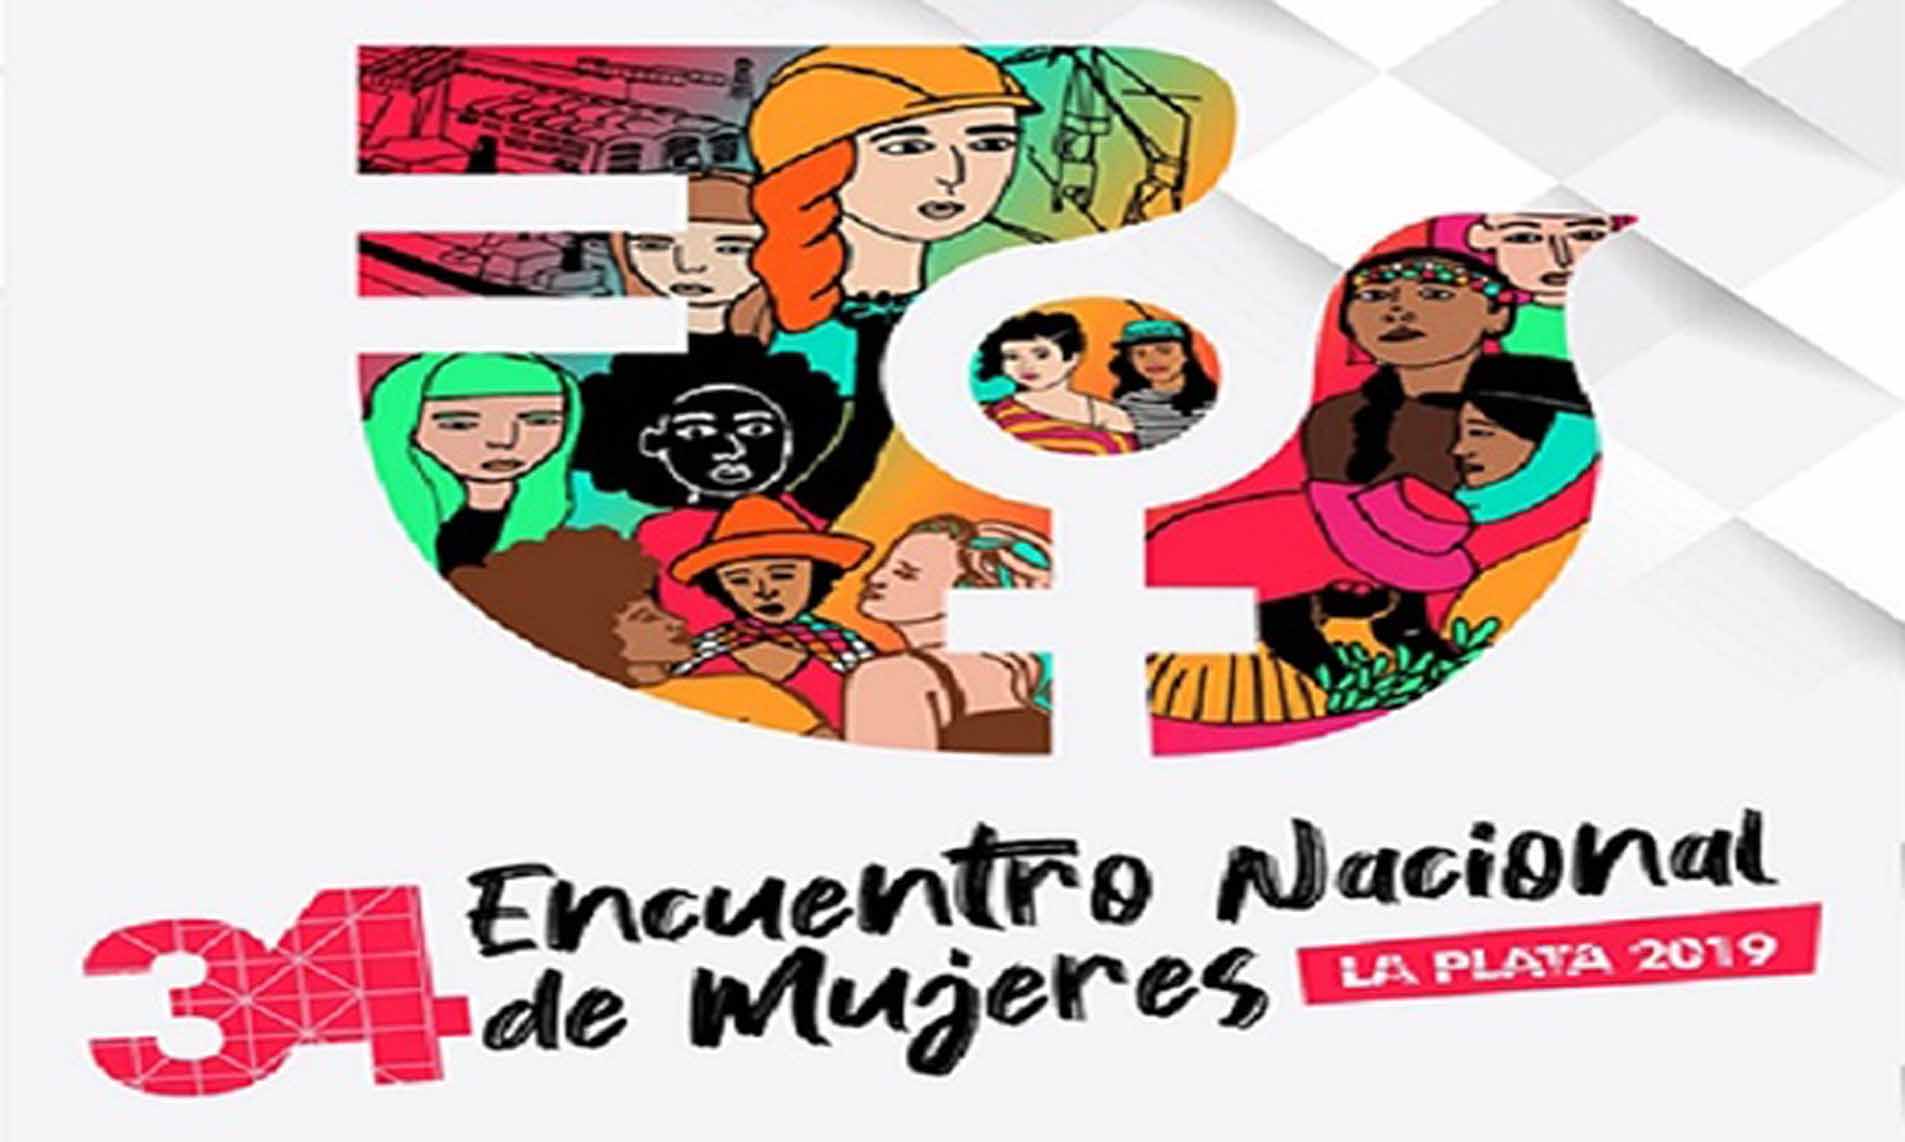 34 Encuentro Nacional de Mujeres 